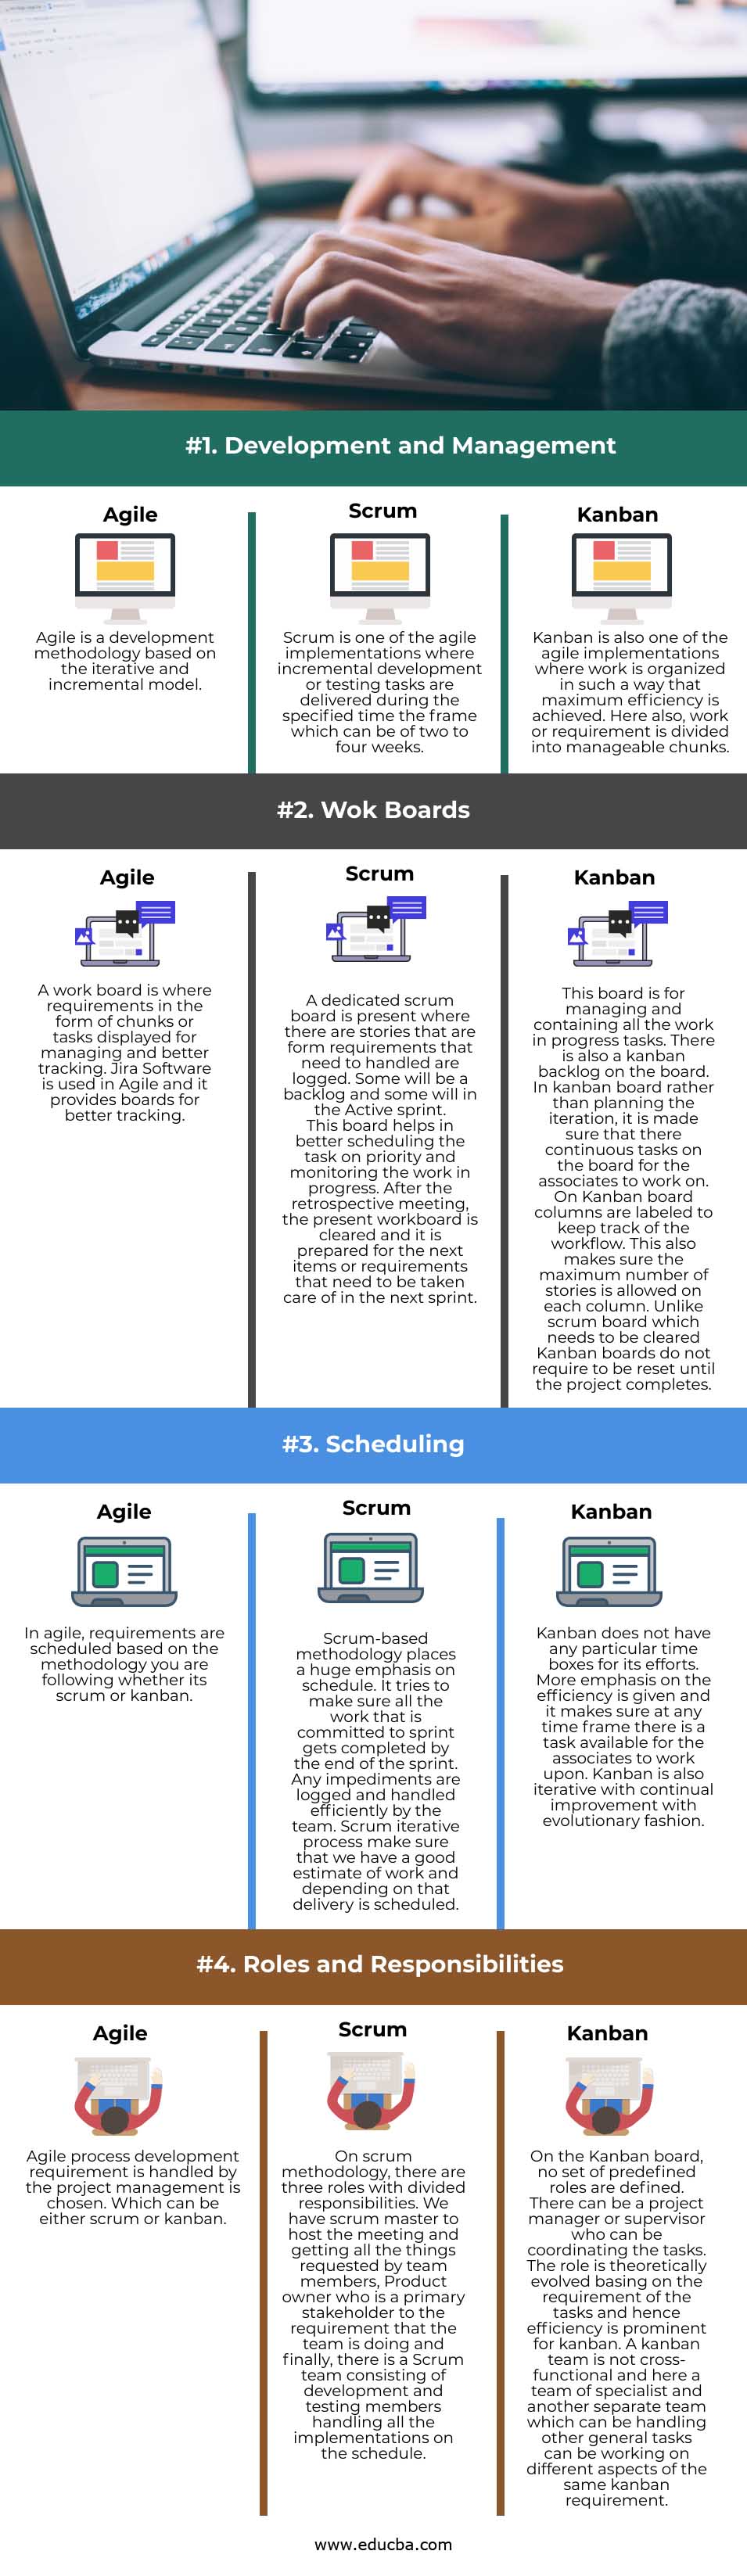 Agile vs Scrum vs Kanban info